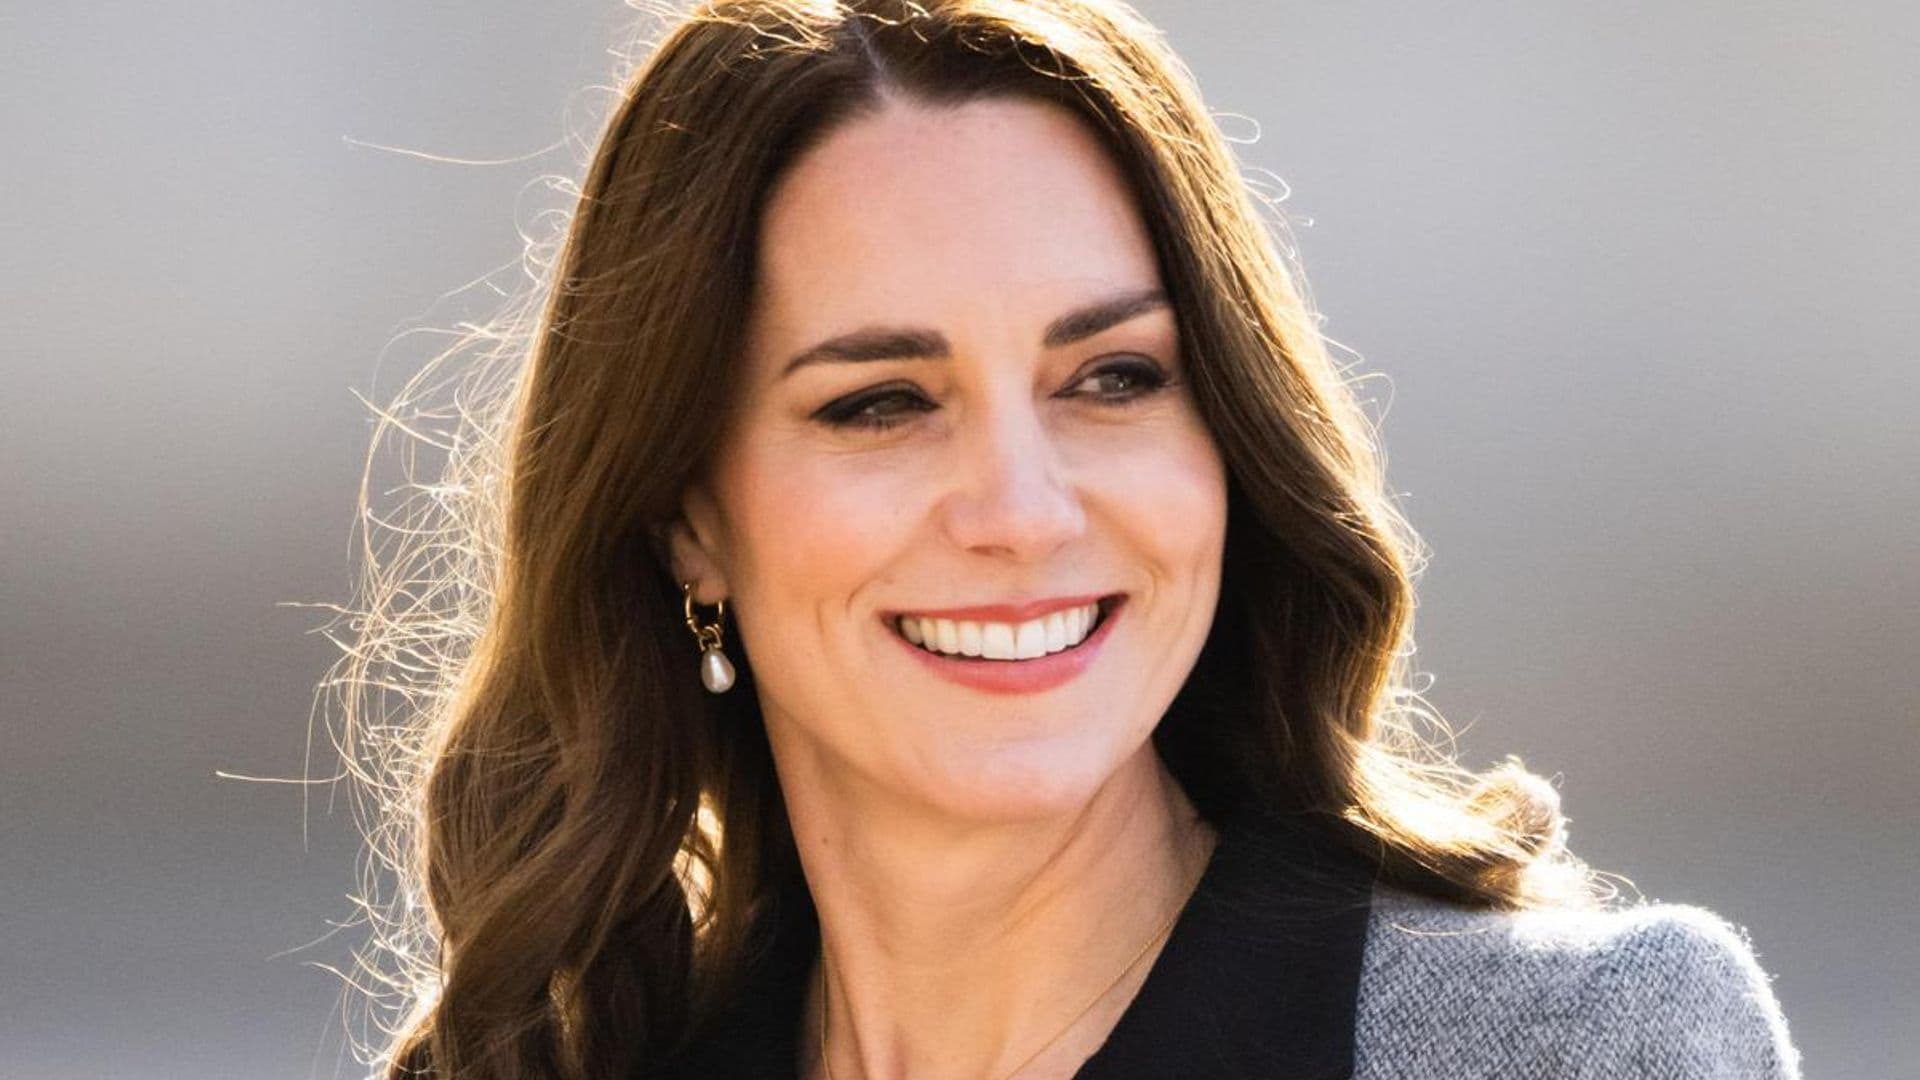 Kate Middleton flies economy with kids to Scotland